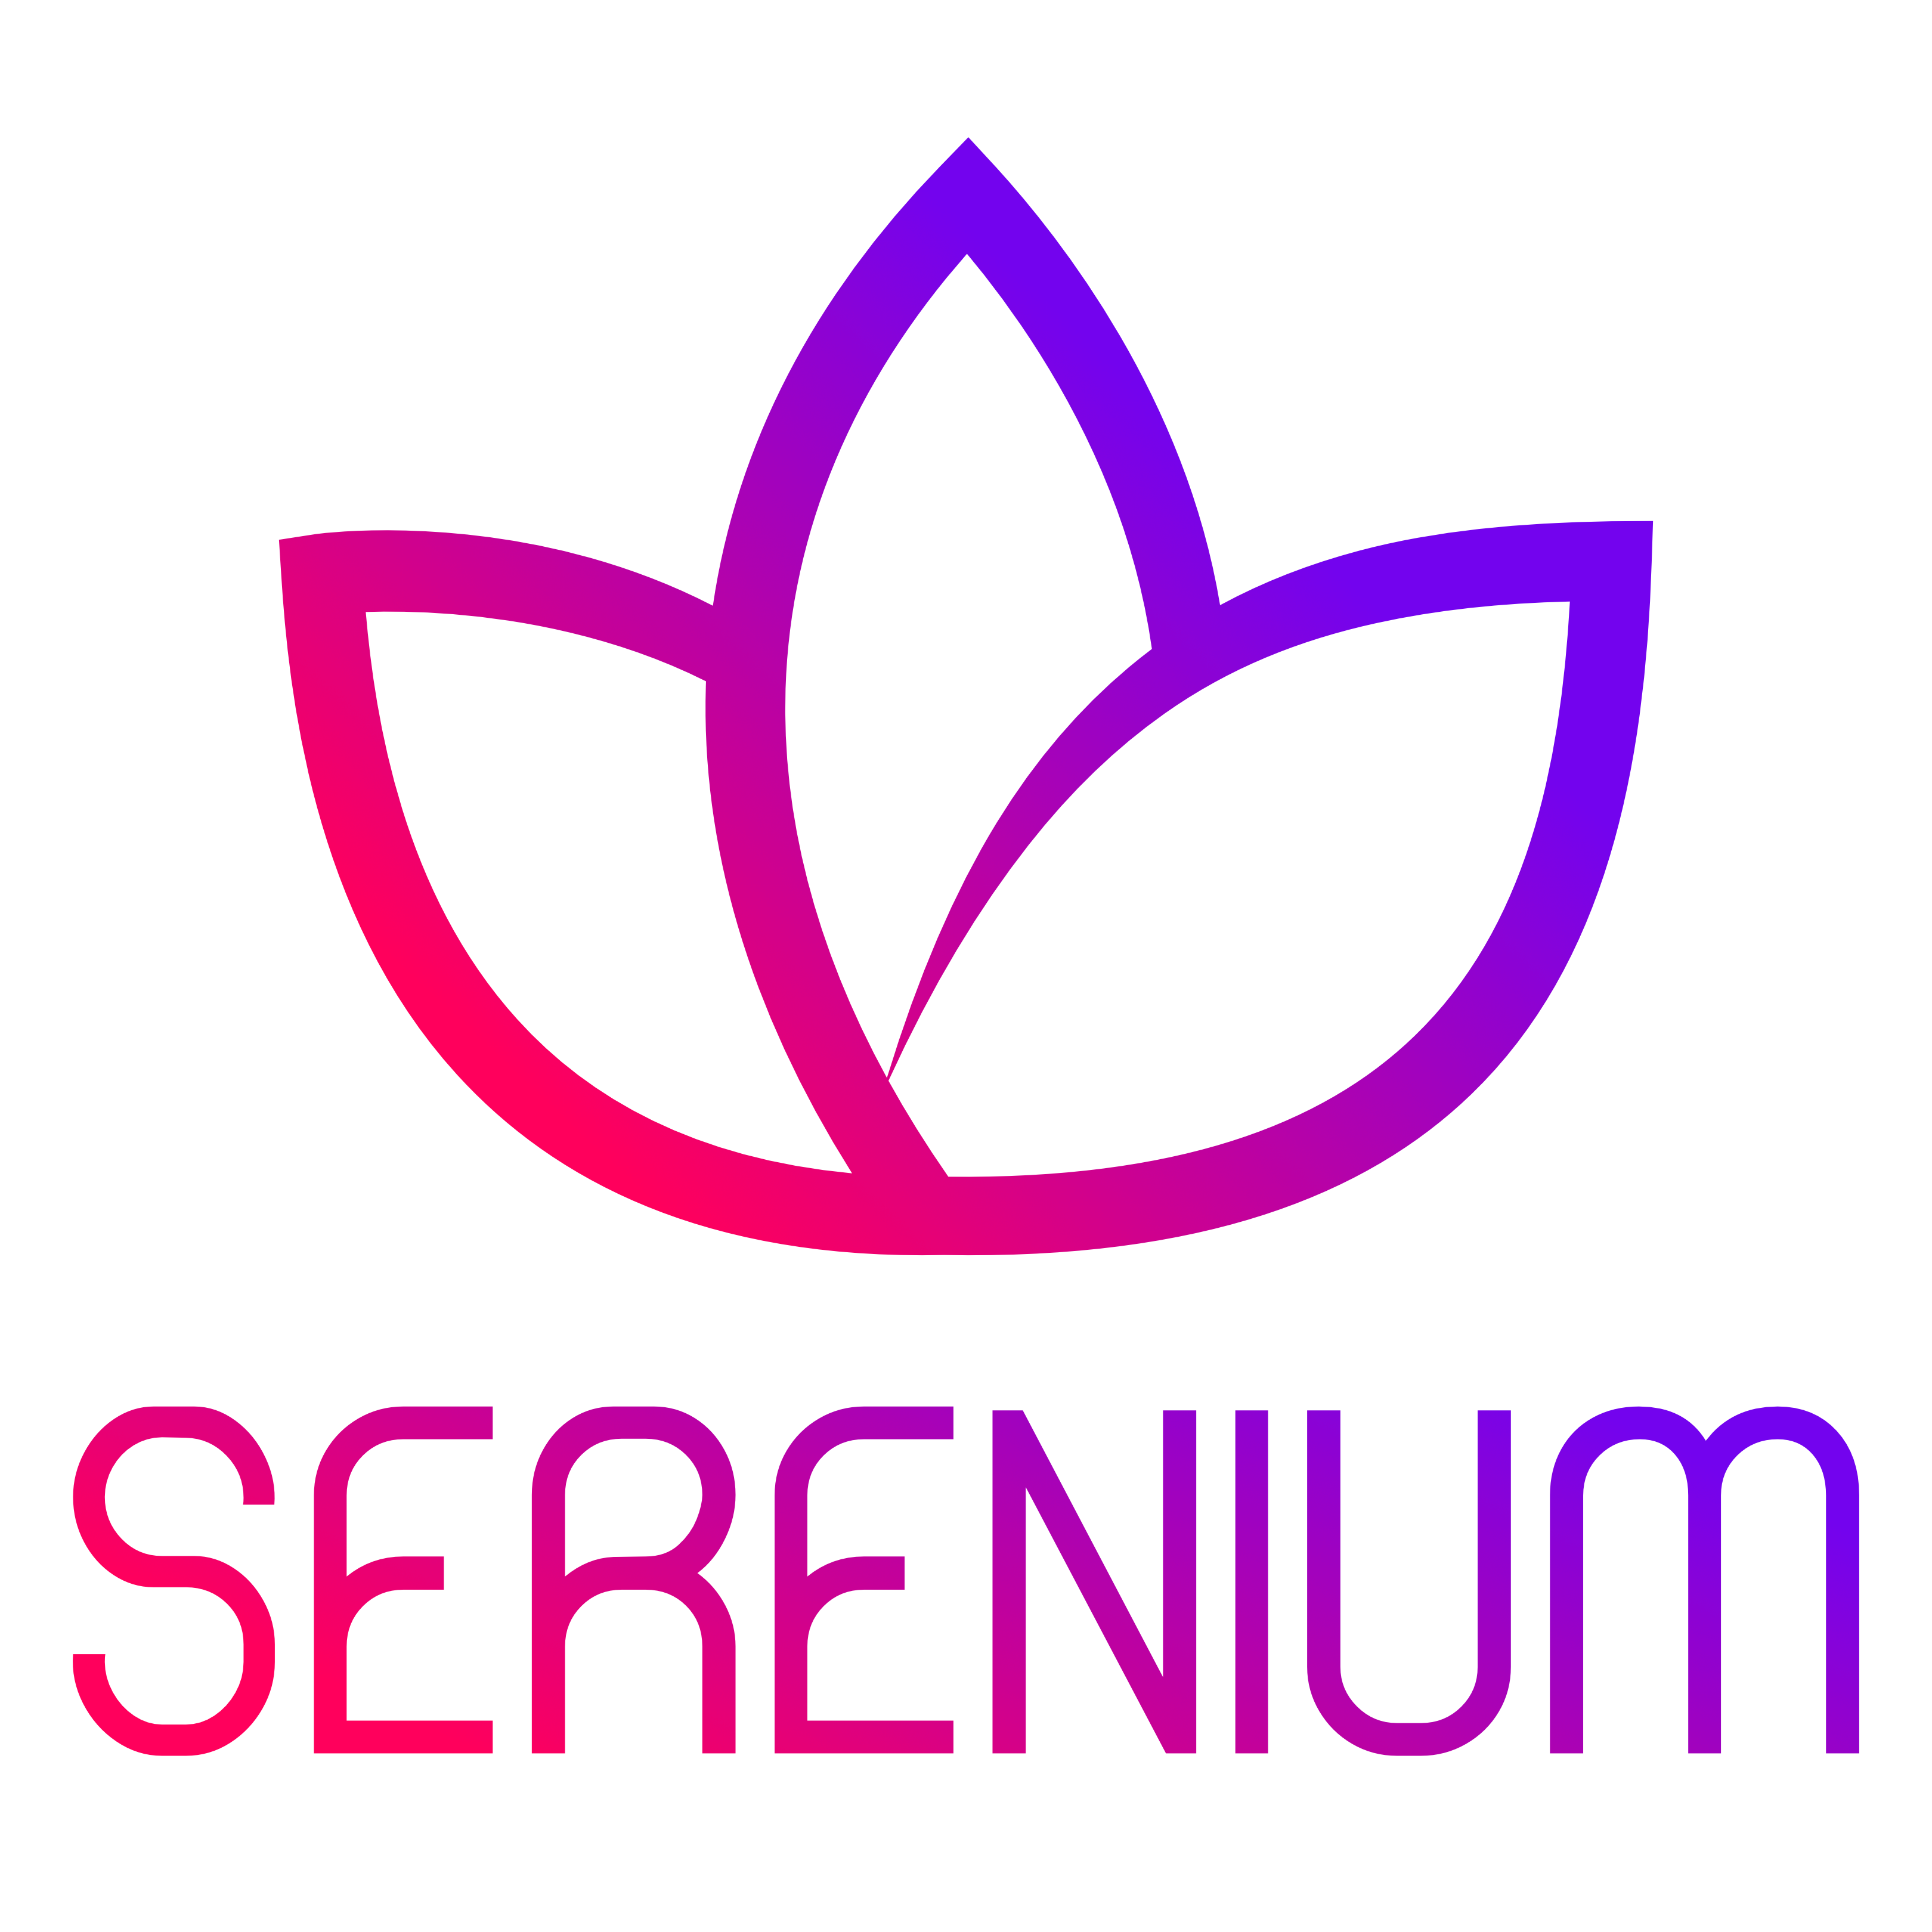 Serenium